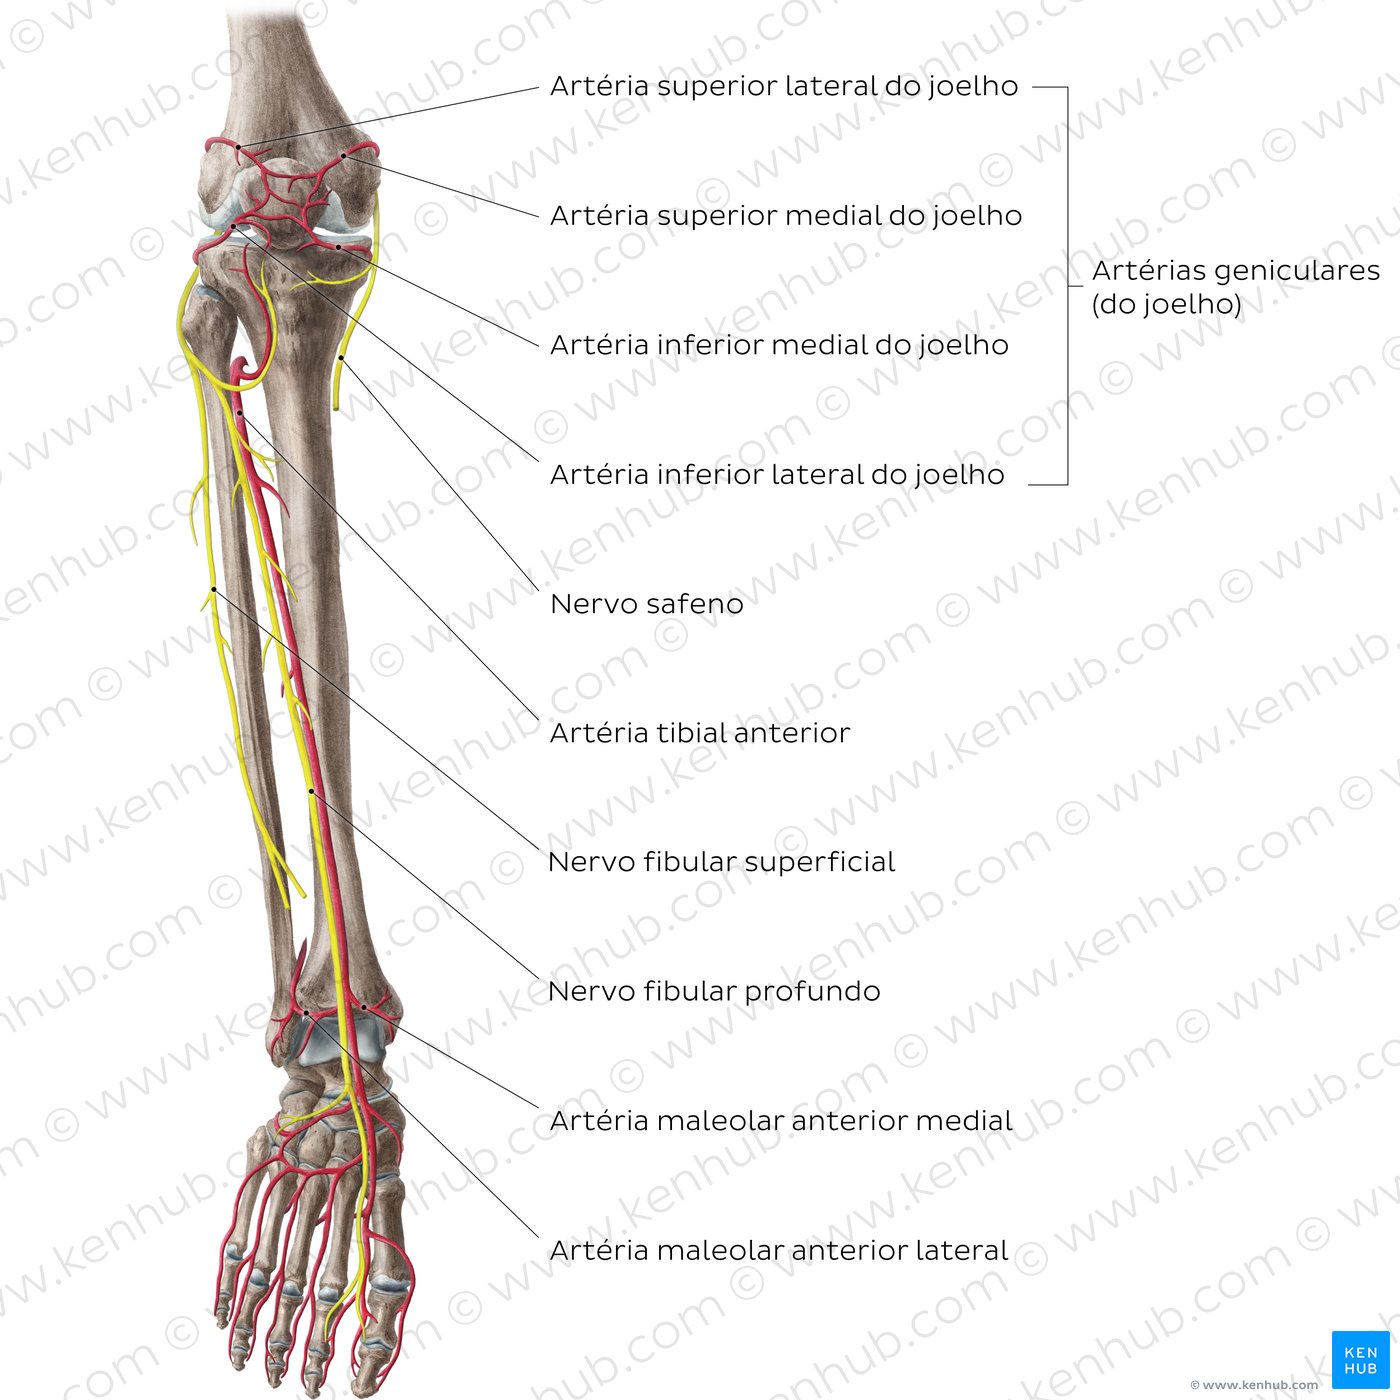 Artérias e nervos do joelho e perna - vista anterior